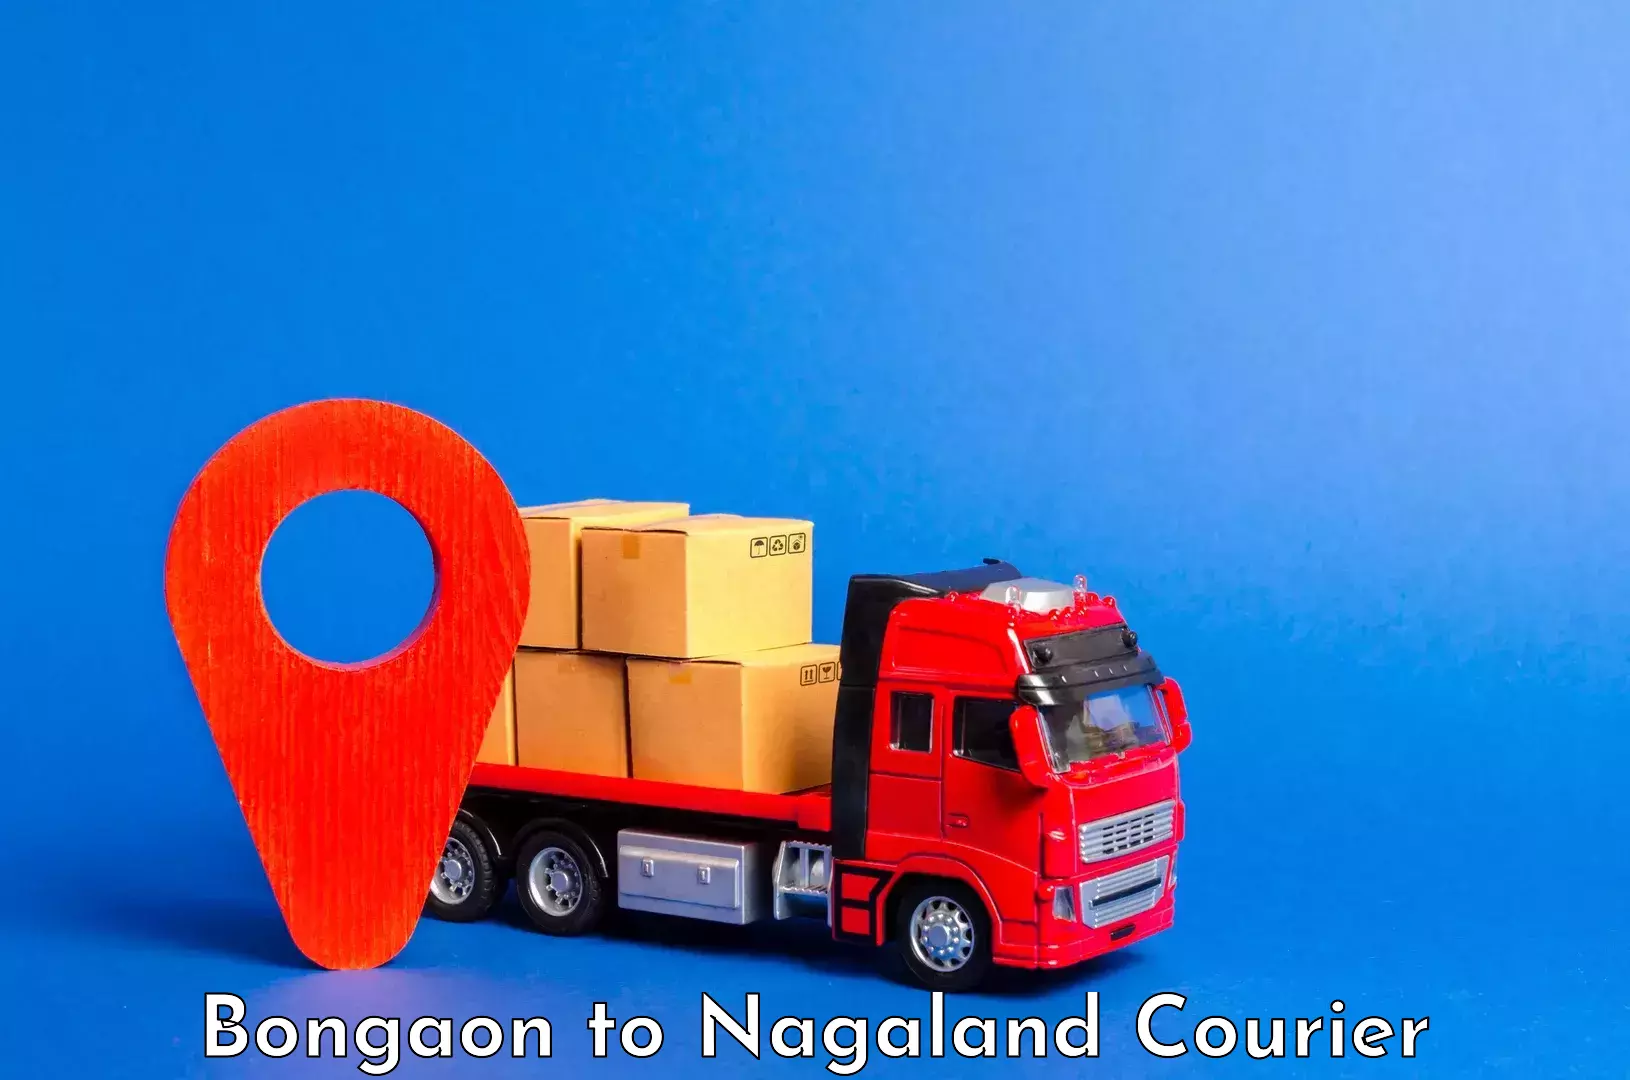 Urgent luggage shipment in Bongaon to Dimapur